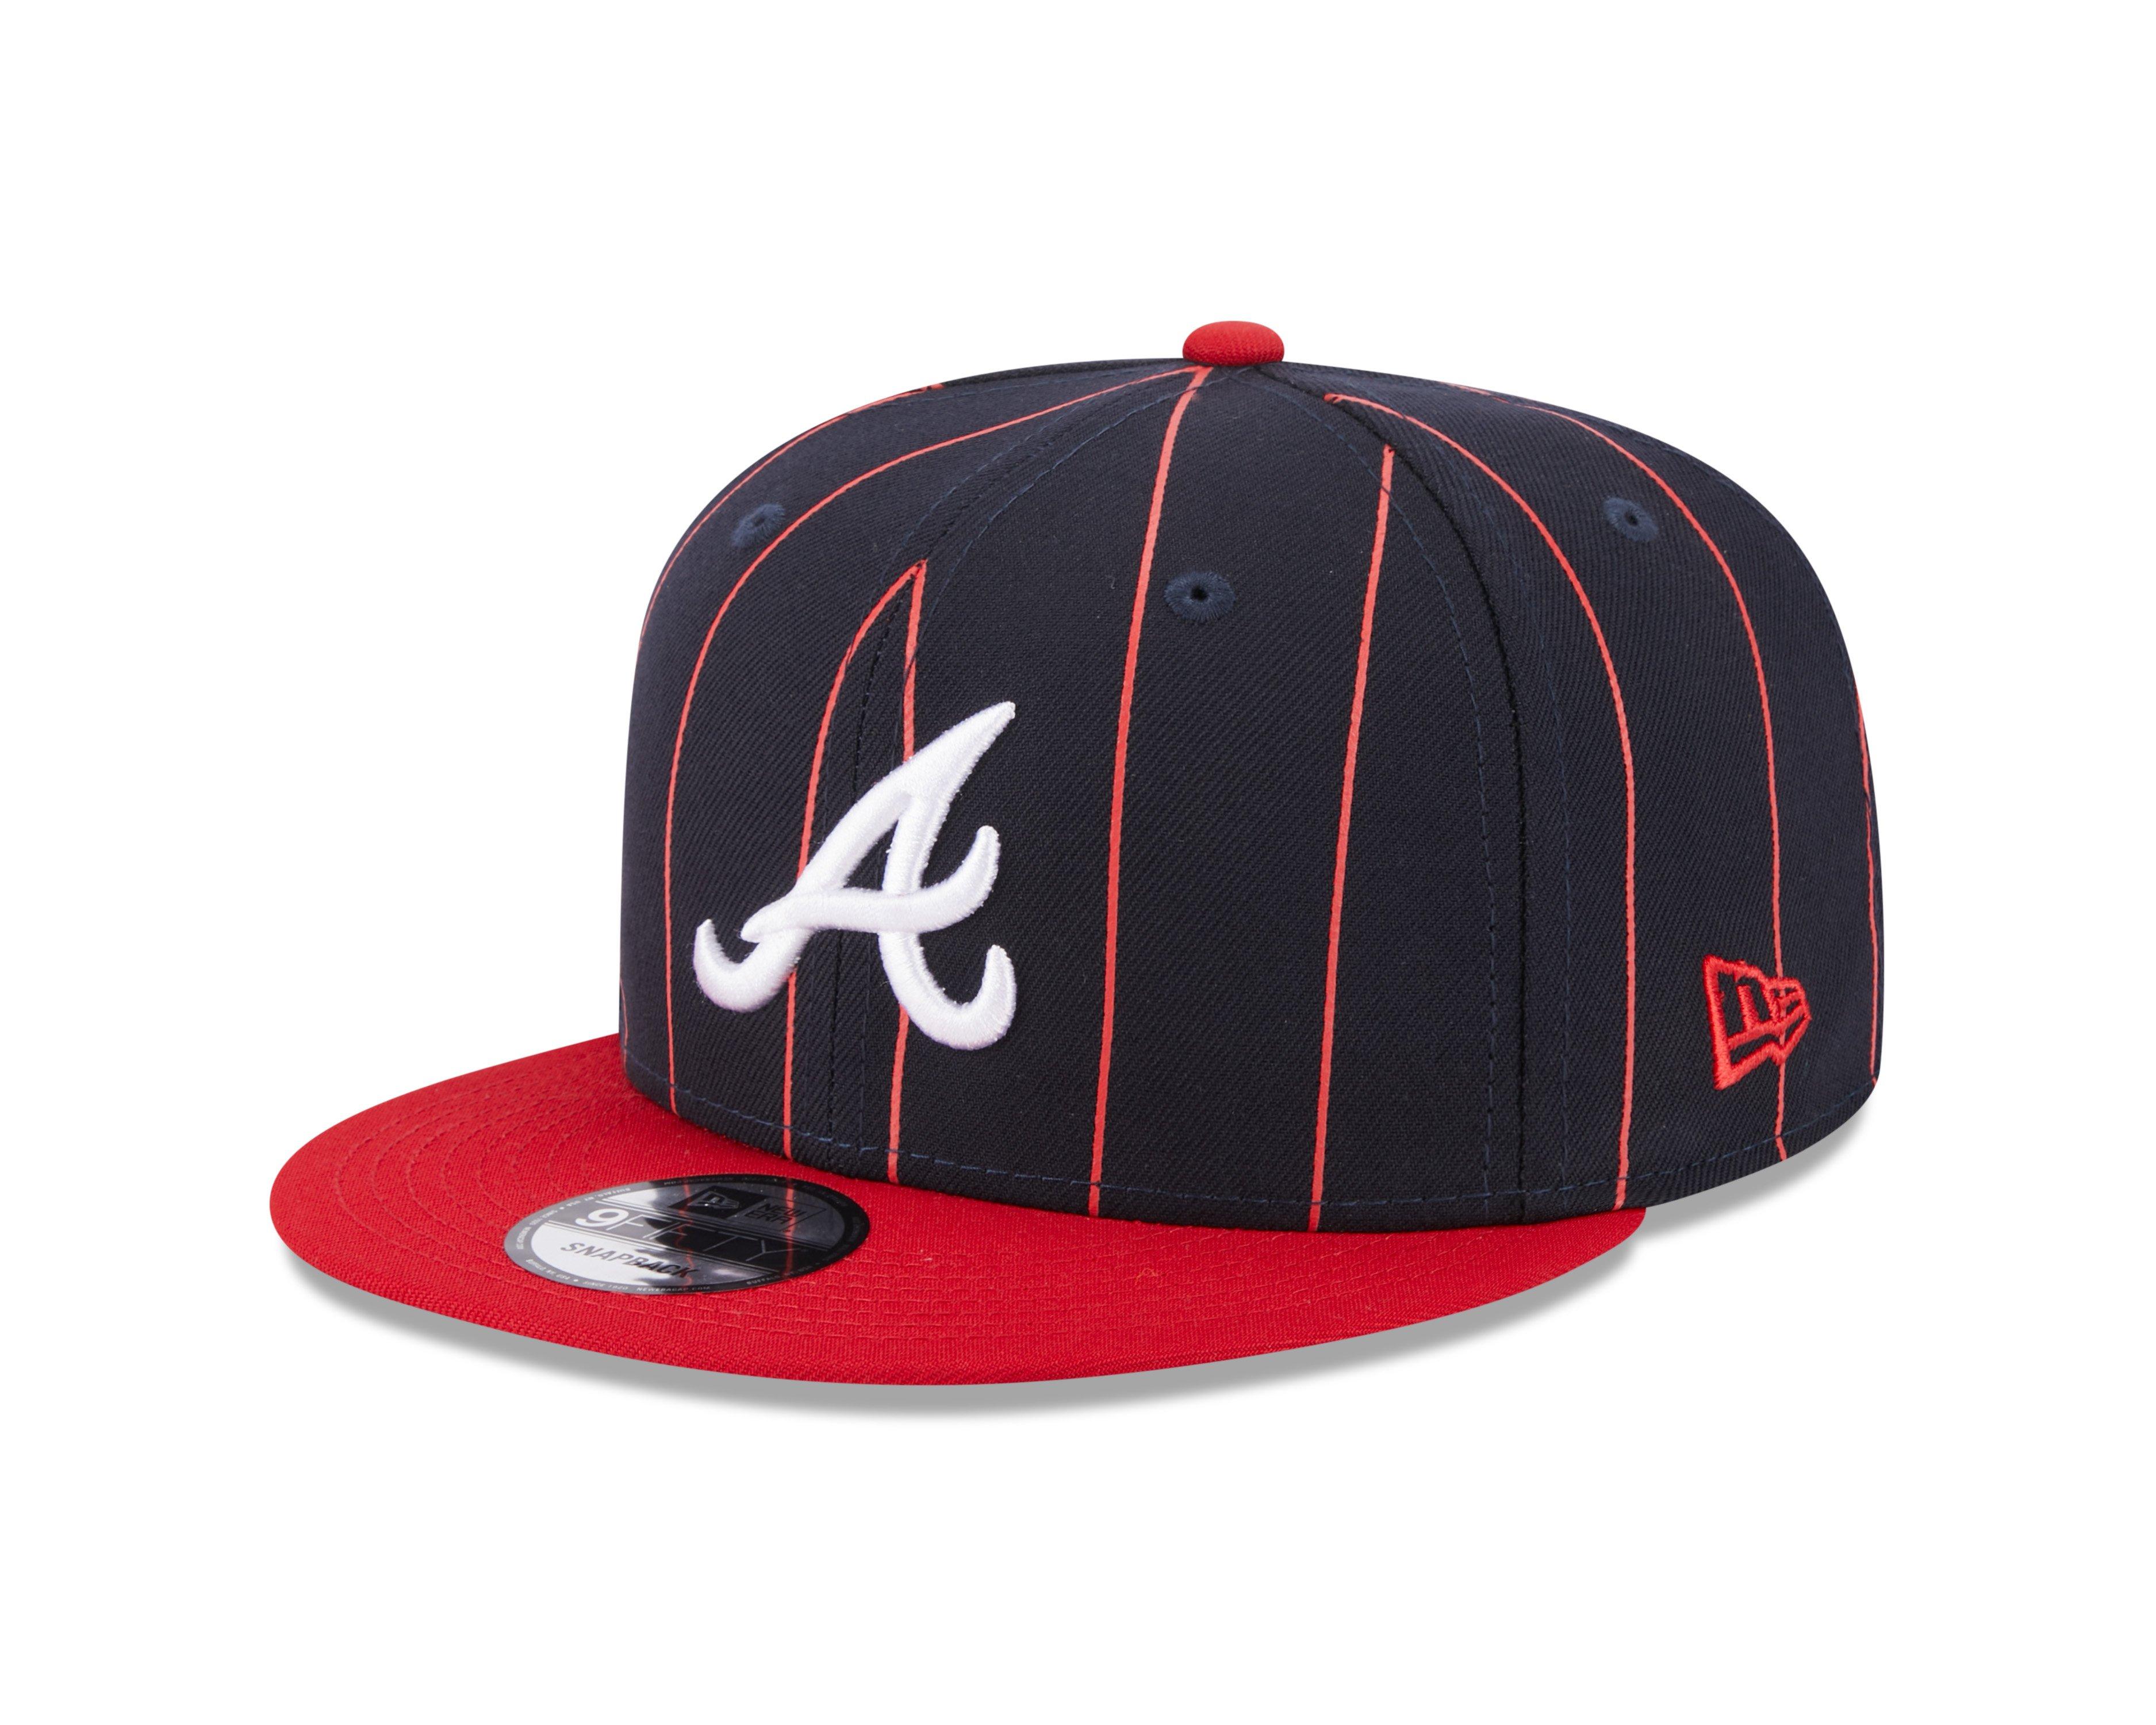 Atlanta Braves New Era Vintage 9FIFTY Snapback Hat - White